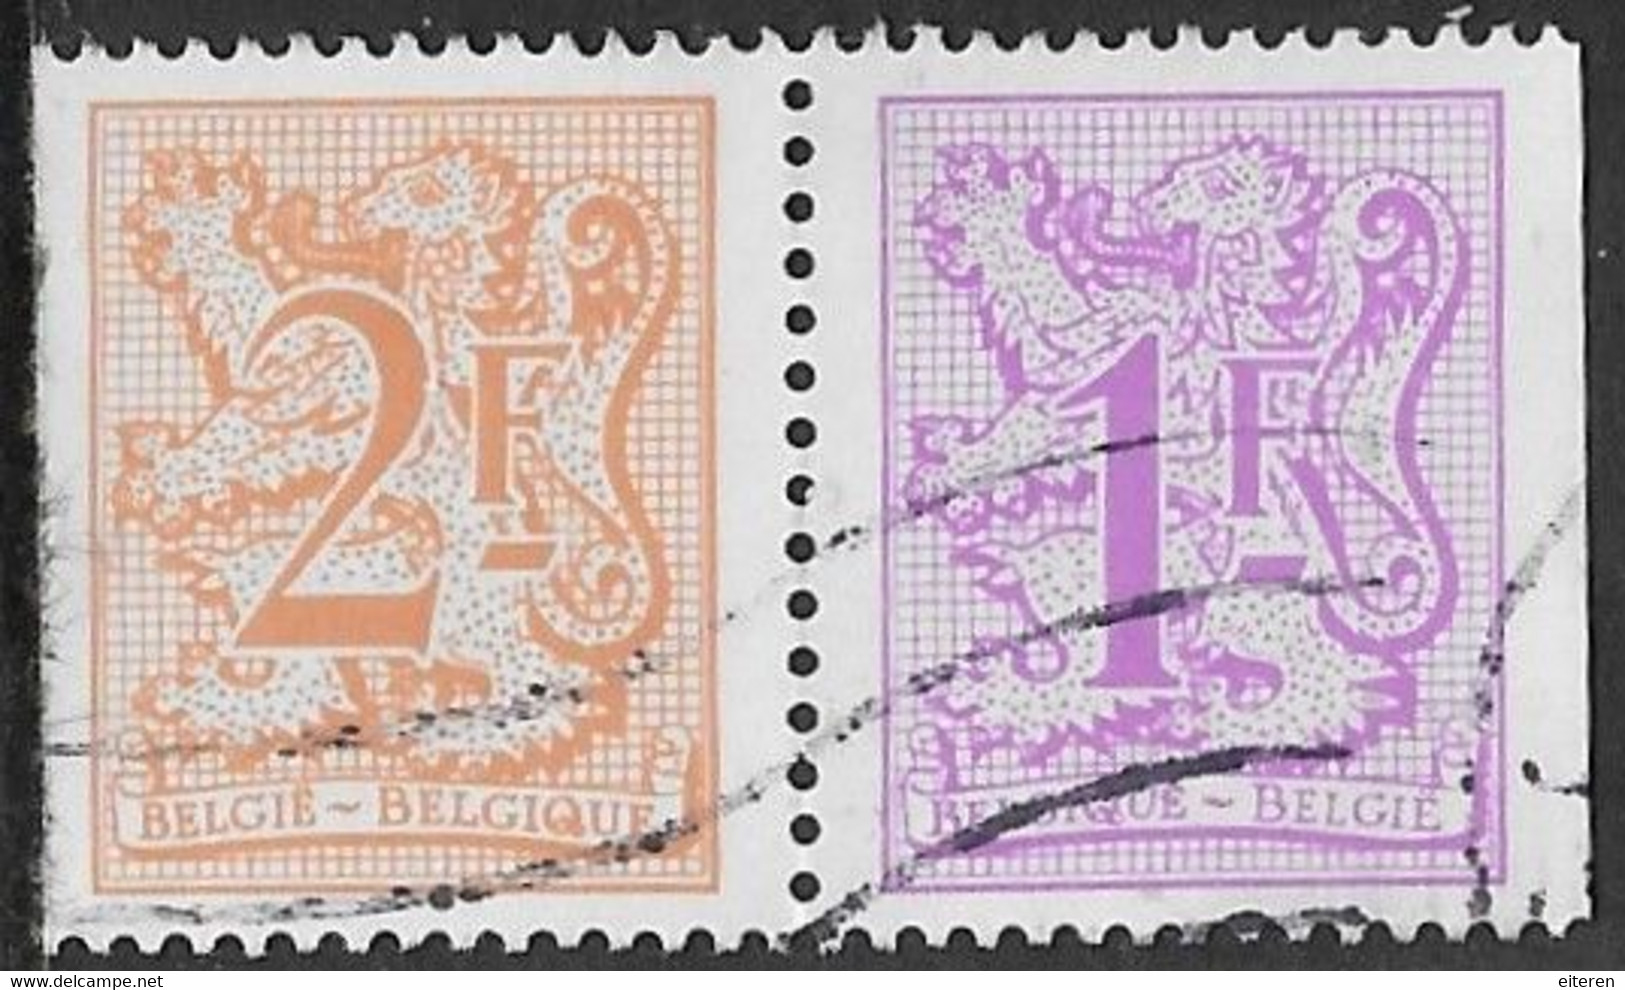 Combinatie Postzegelboekje - 1977-1985 Cijfer Op De Leeuw